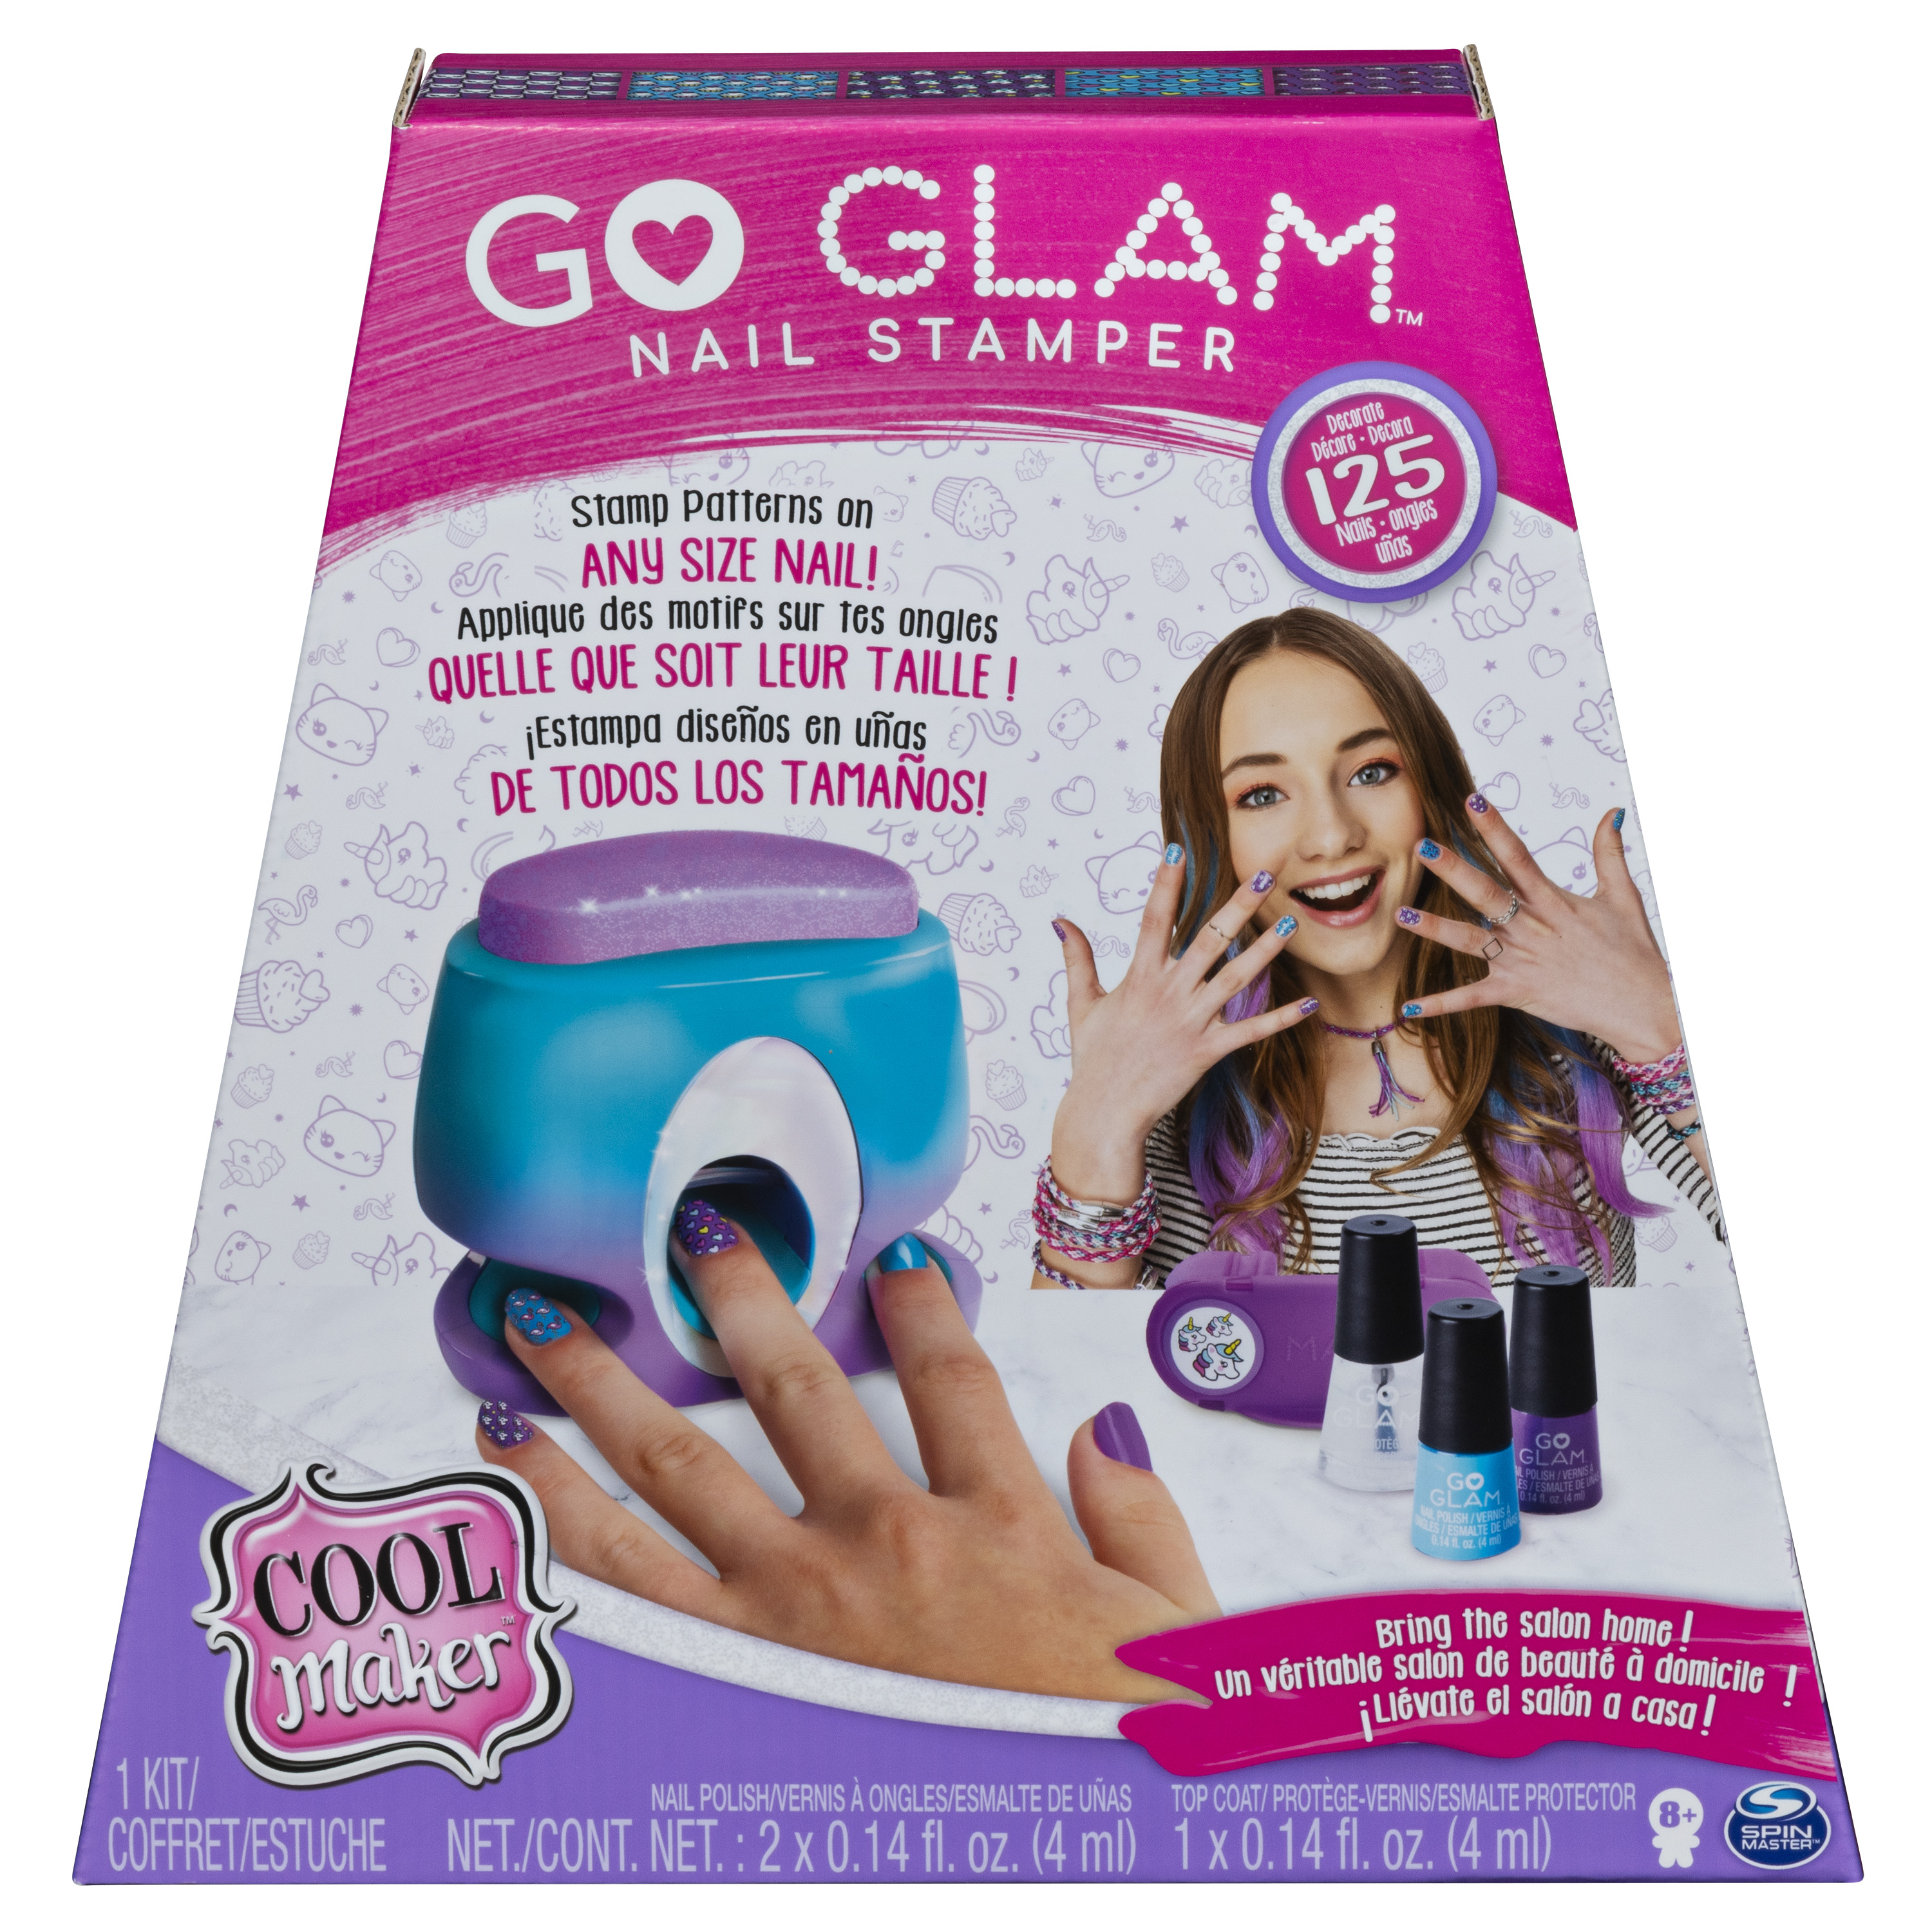 Go Glam Nail Stamper Cool Maker